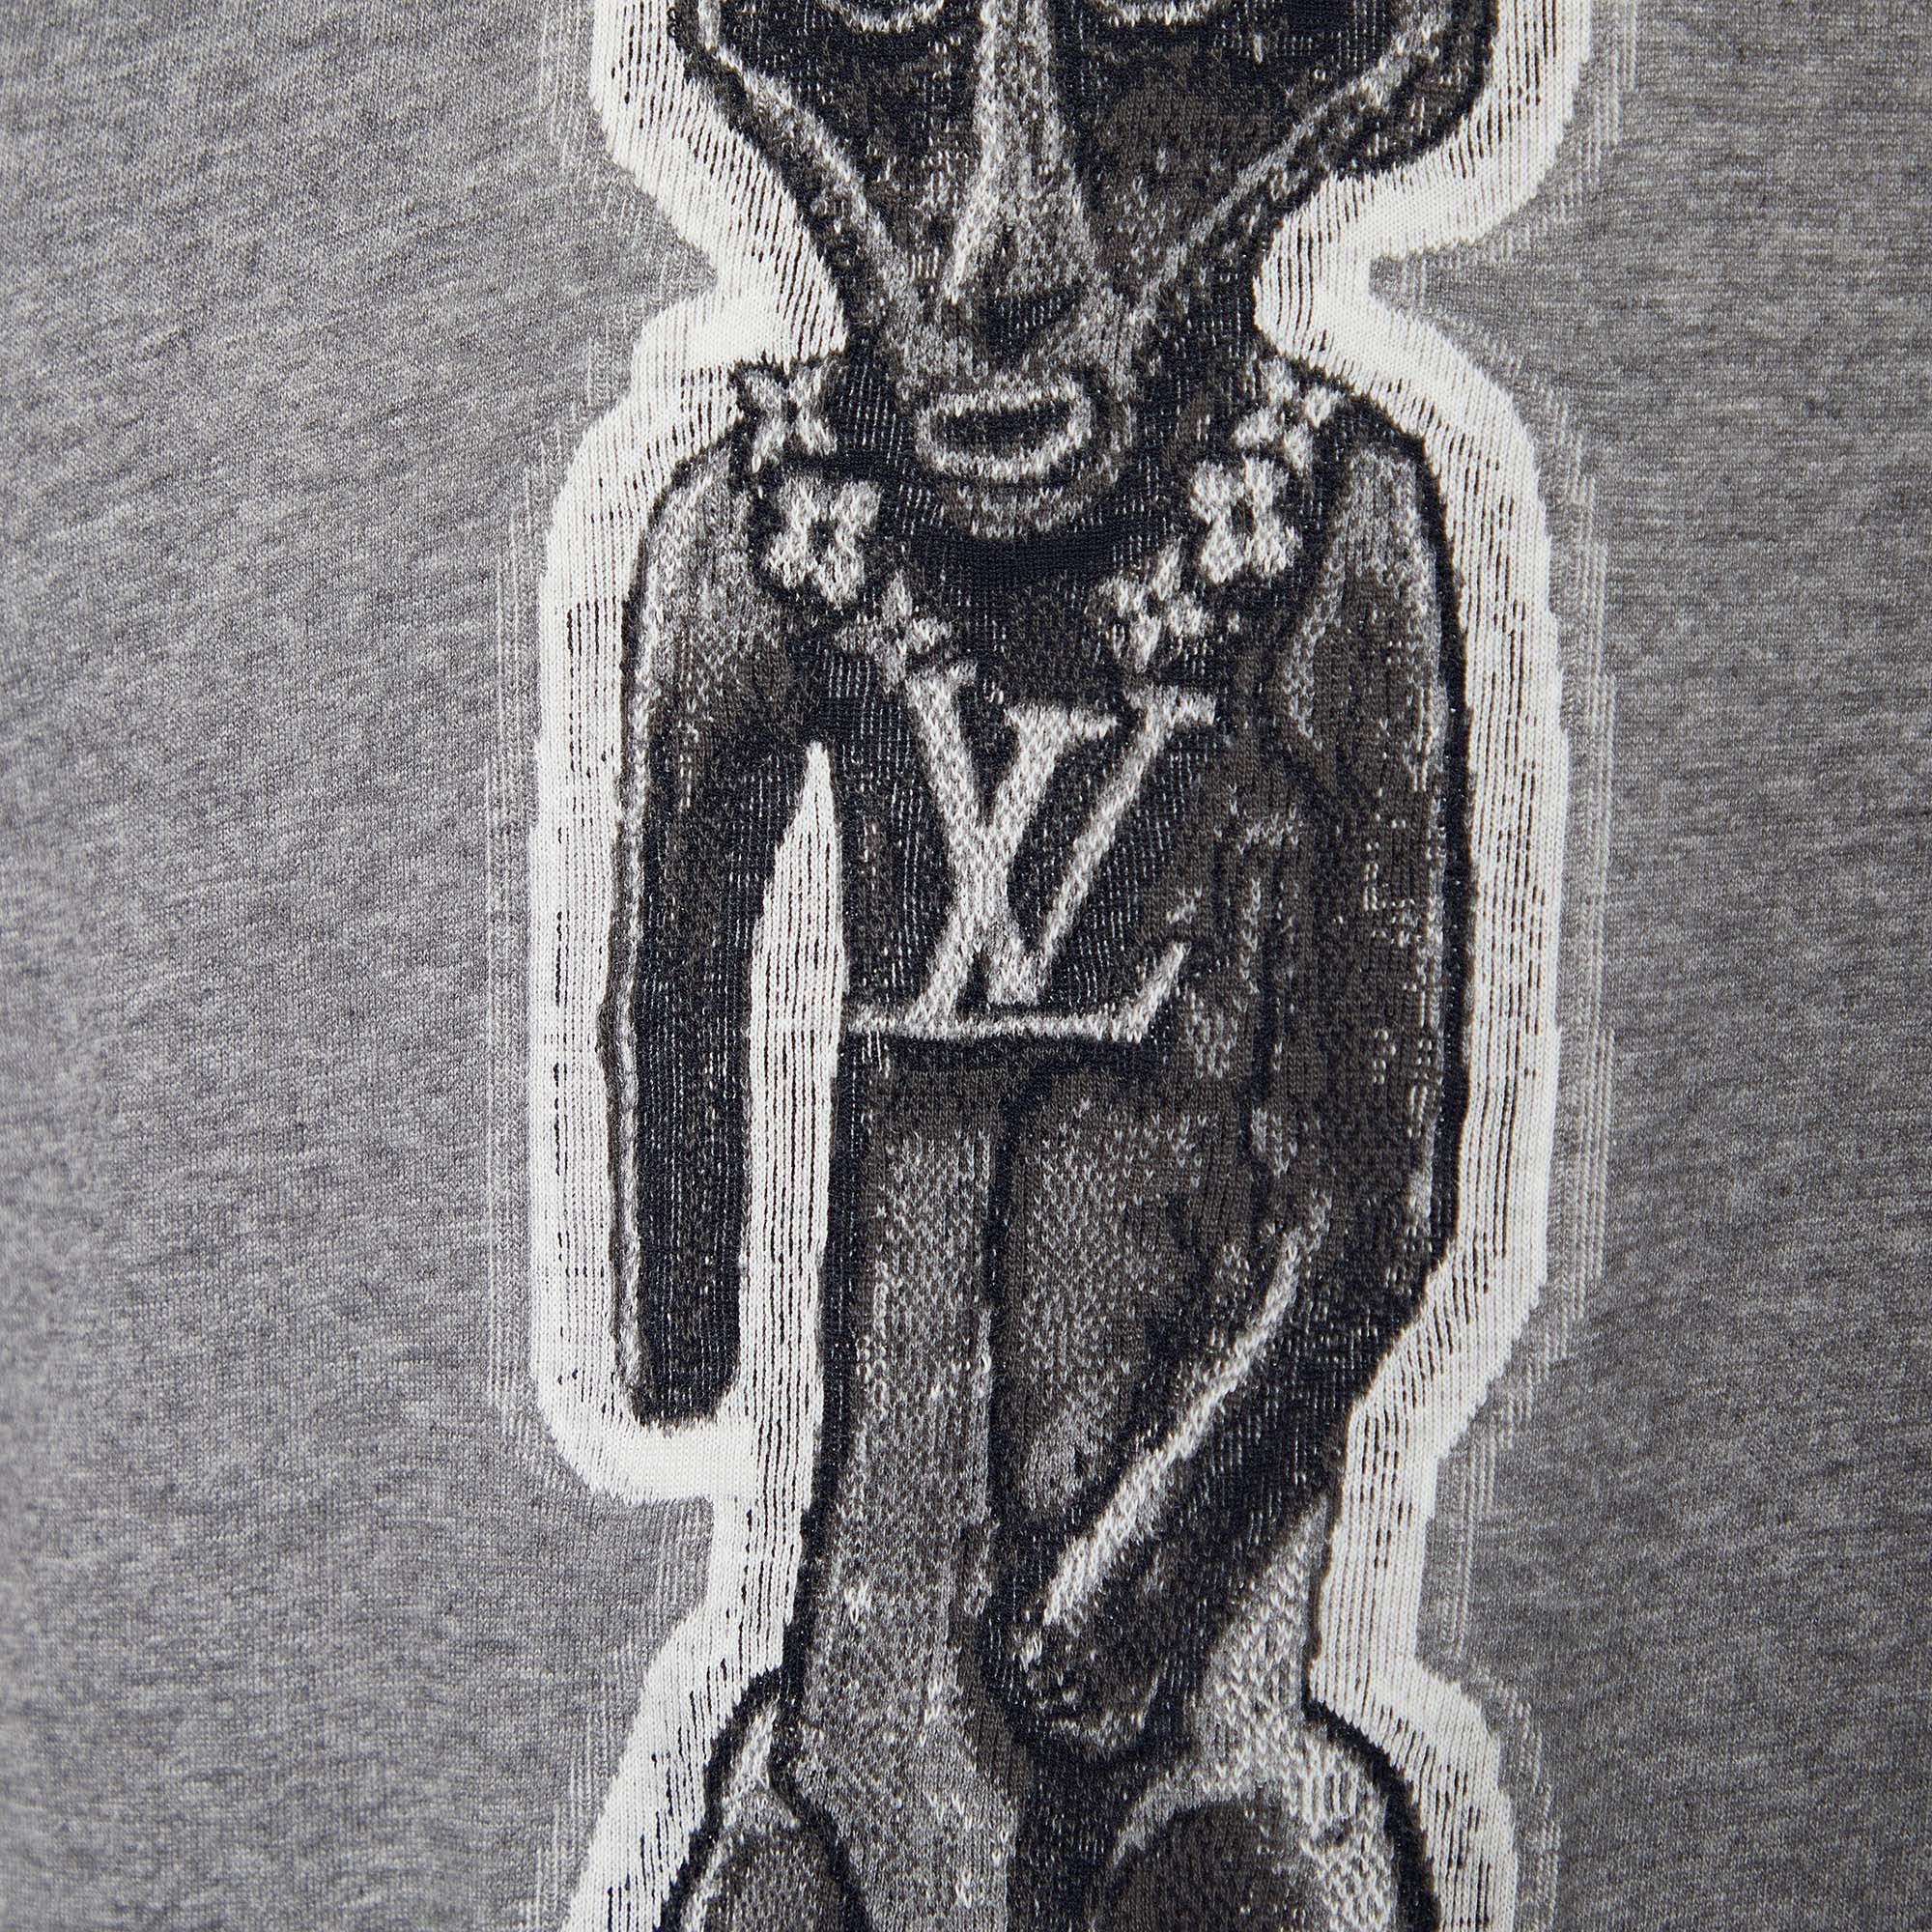 Louis Vuitton Short Sleeve Crew Neck T-shirt Chapman Zulu Statue